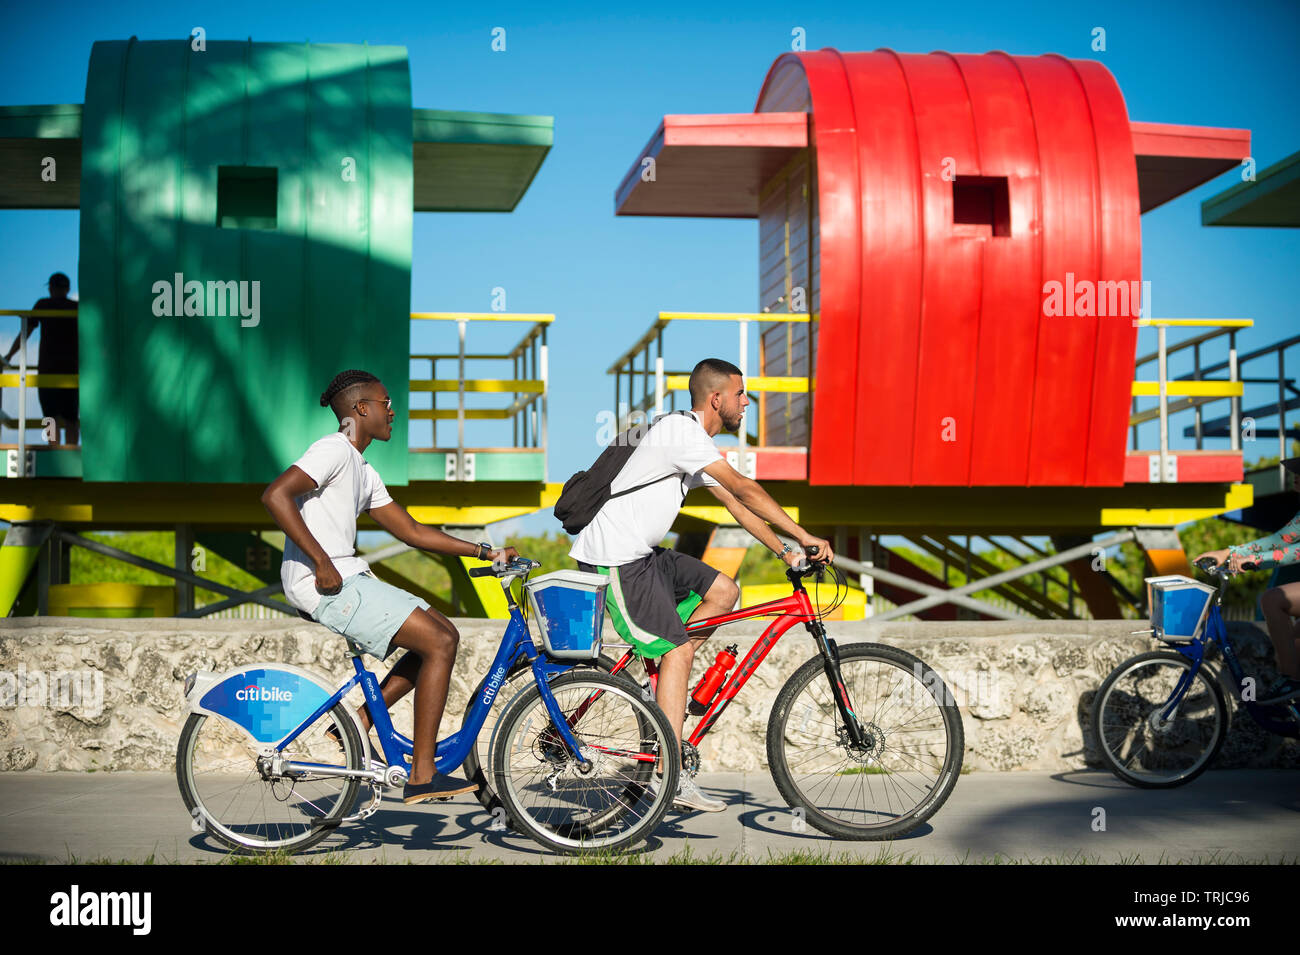 MIAMI - Luglio 2017: turisti utilizzando CitiBike bicicletta sistema condividi ride lungo la passeggiata in spiaggia a sud di fronte a una fila di coloratissimi lifeguard torri. Foto Stock